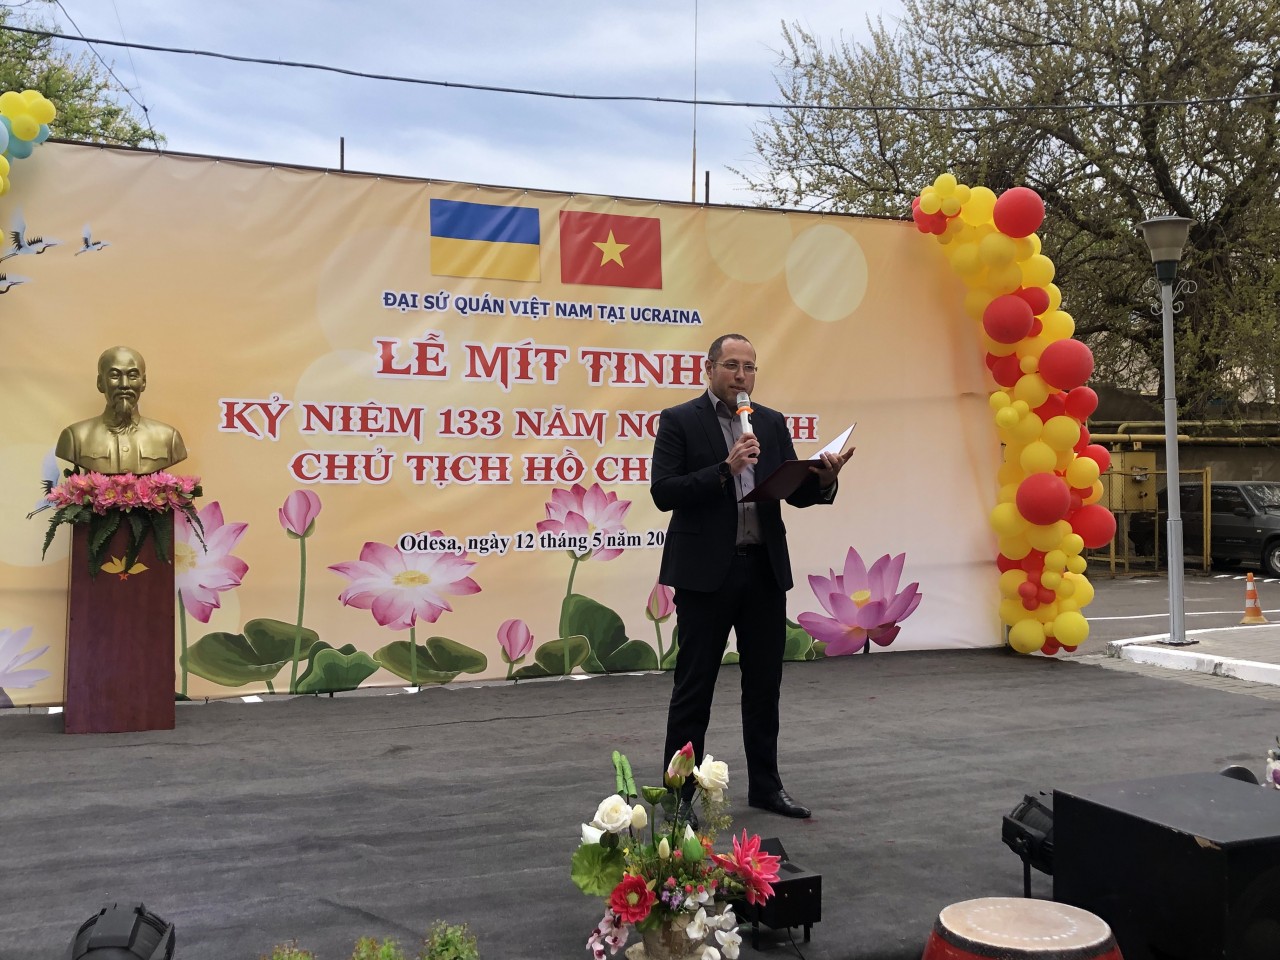 Kỷ niệm 133 năm ngày sinh Chủ tịch Hồ Chí Minh tại Odesa, Ukraine